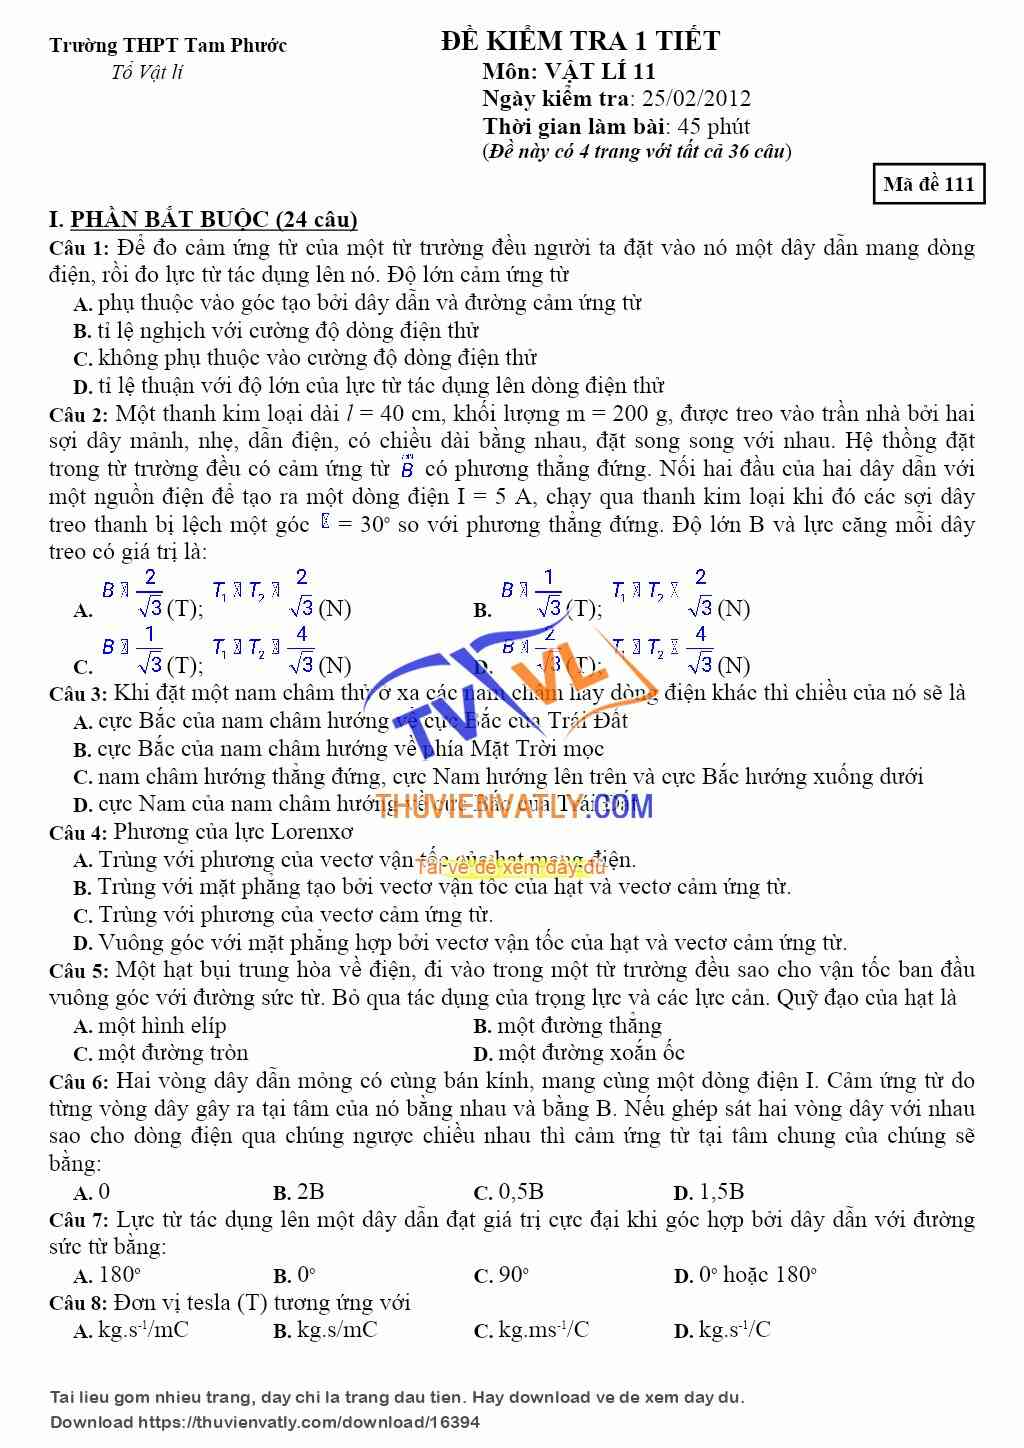 Đề kiểm tra 1 tiết học kì 2 Vật lí 11 - THPT Tam Phước